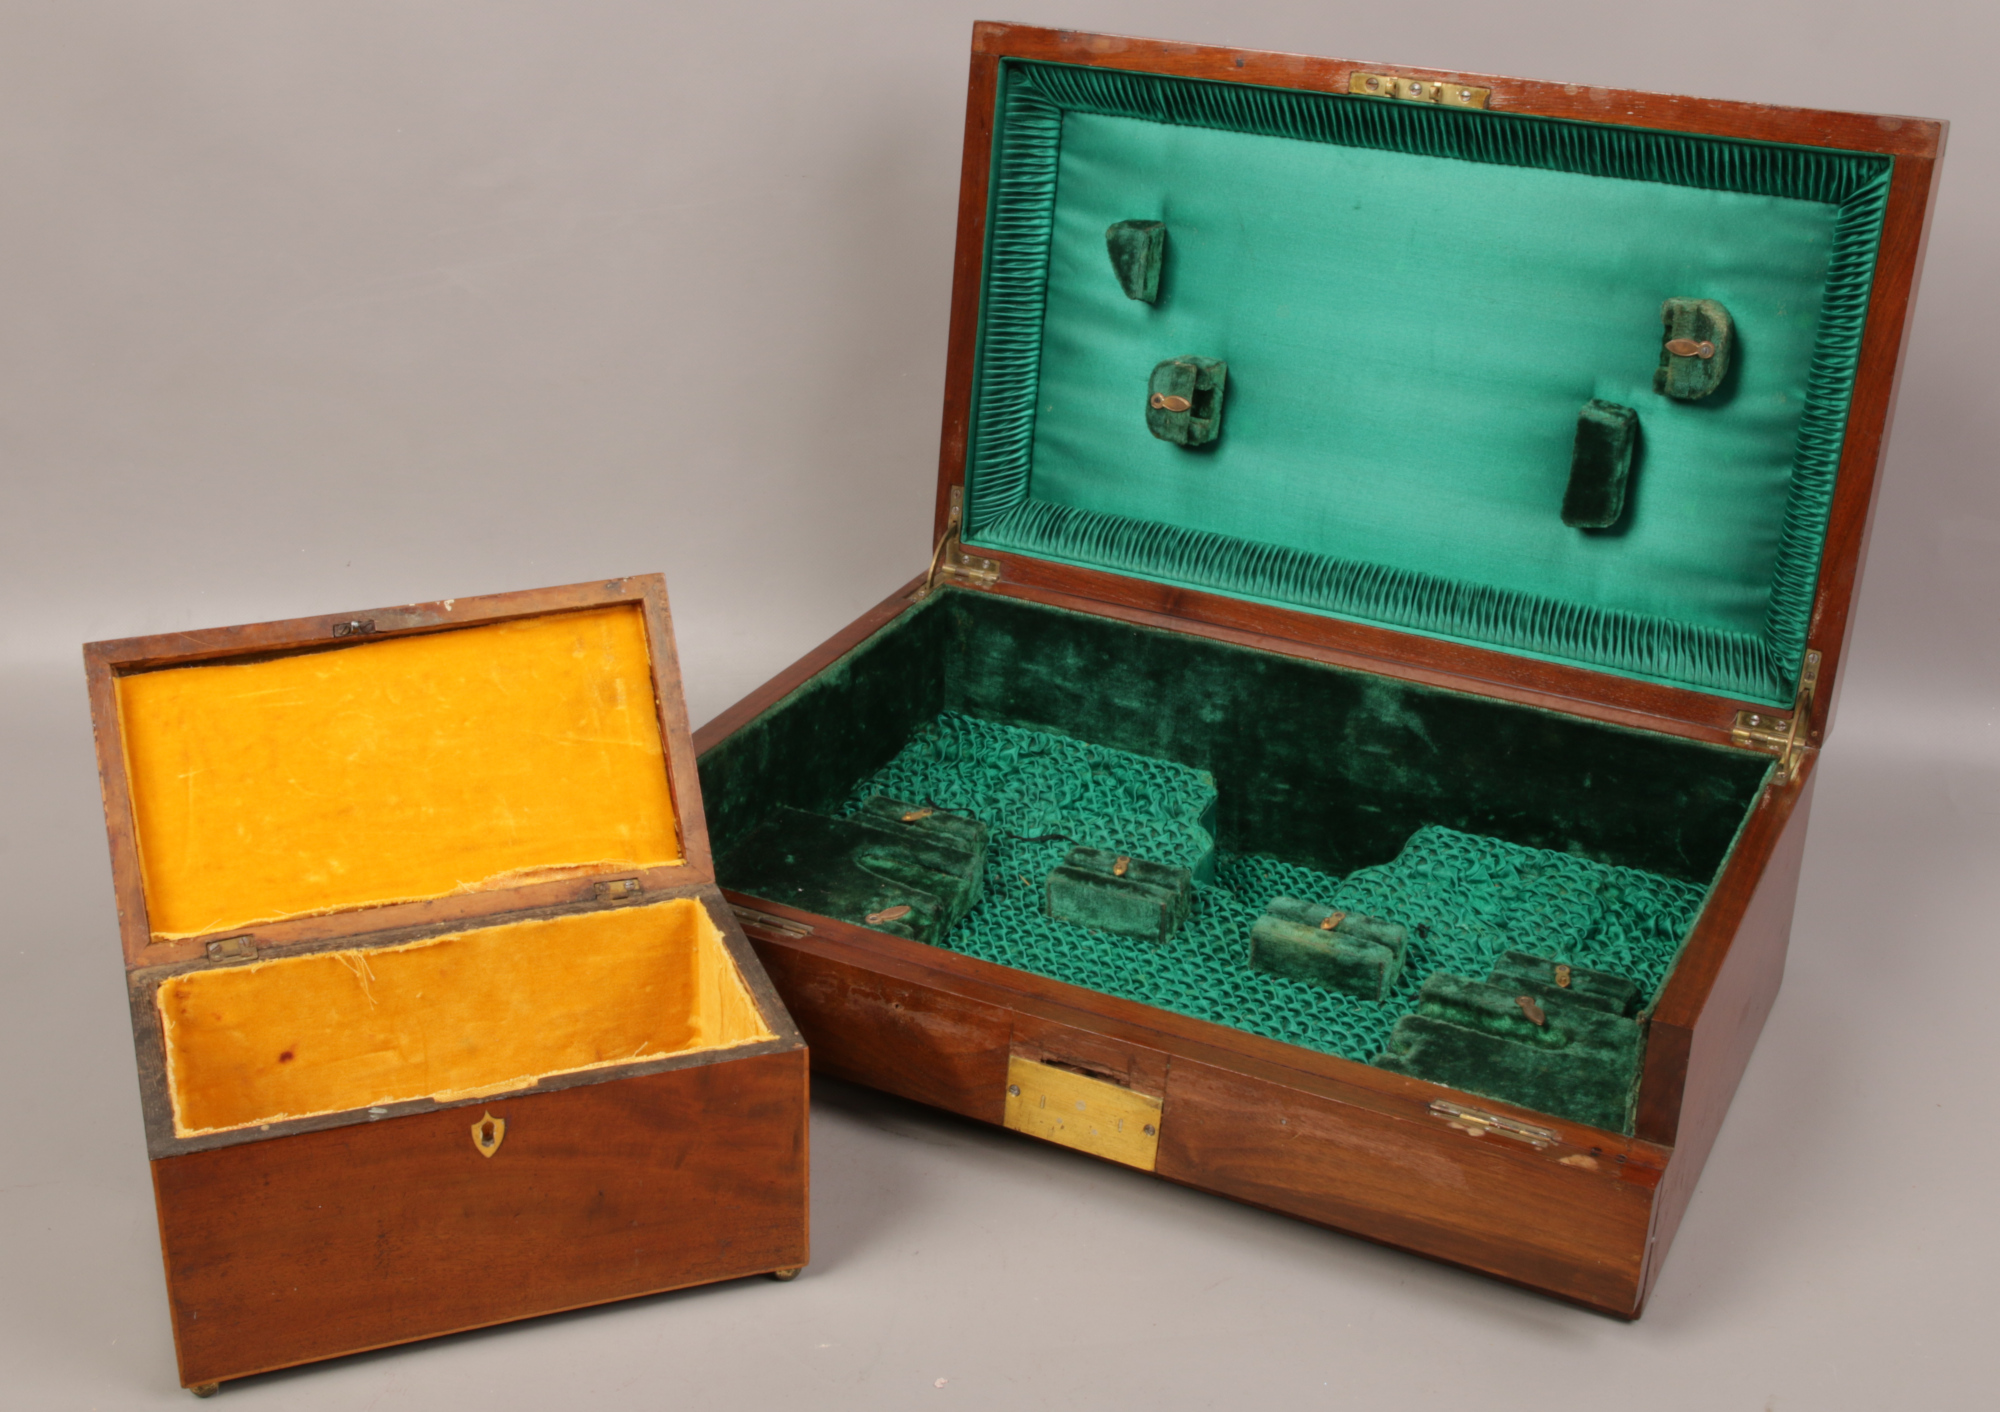 A mahogany cutlery box, along with a Victorian mahogany tea caddy. - Image 2 of 2